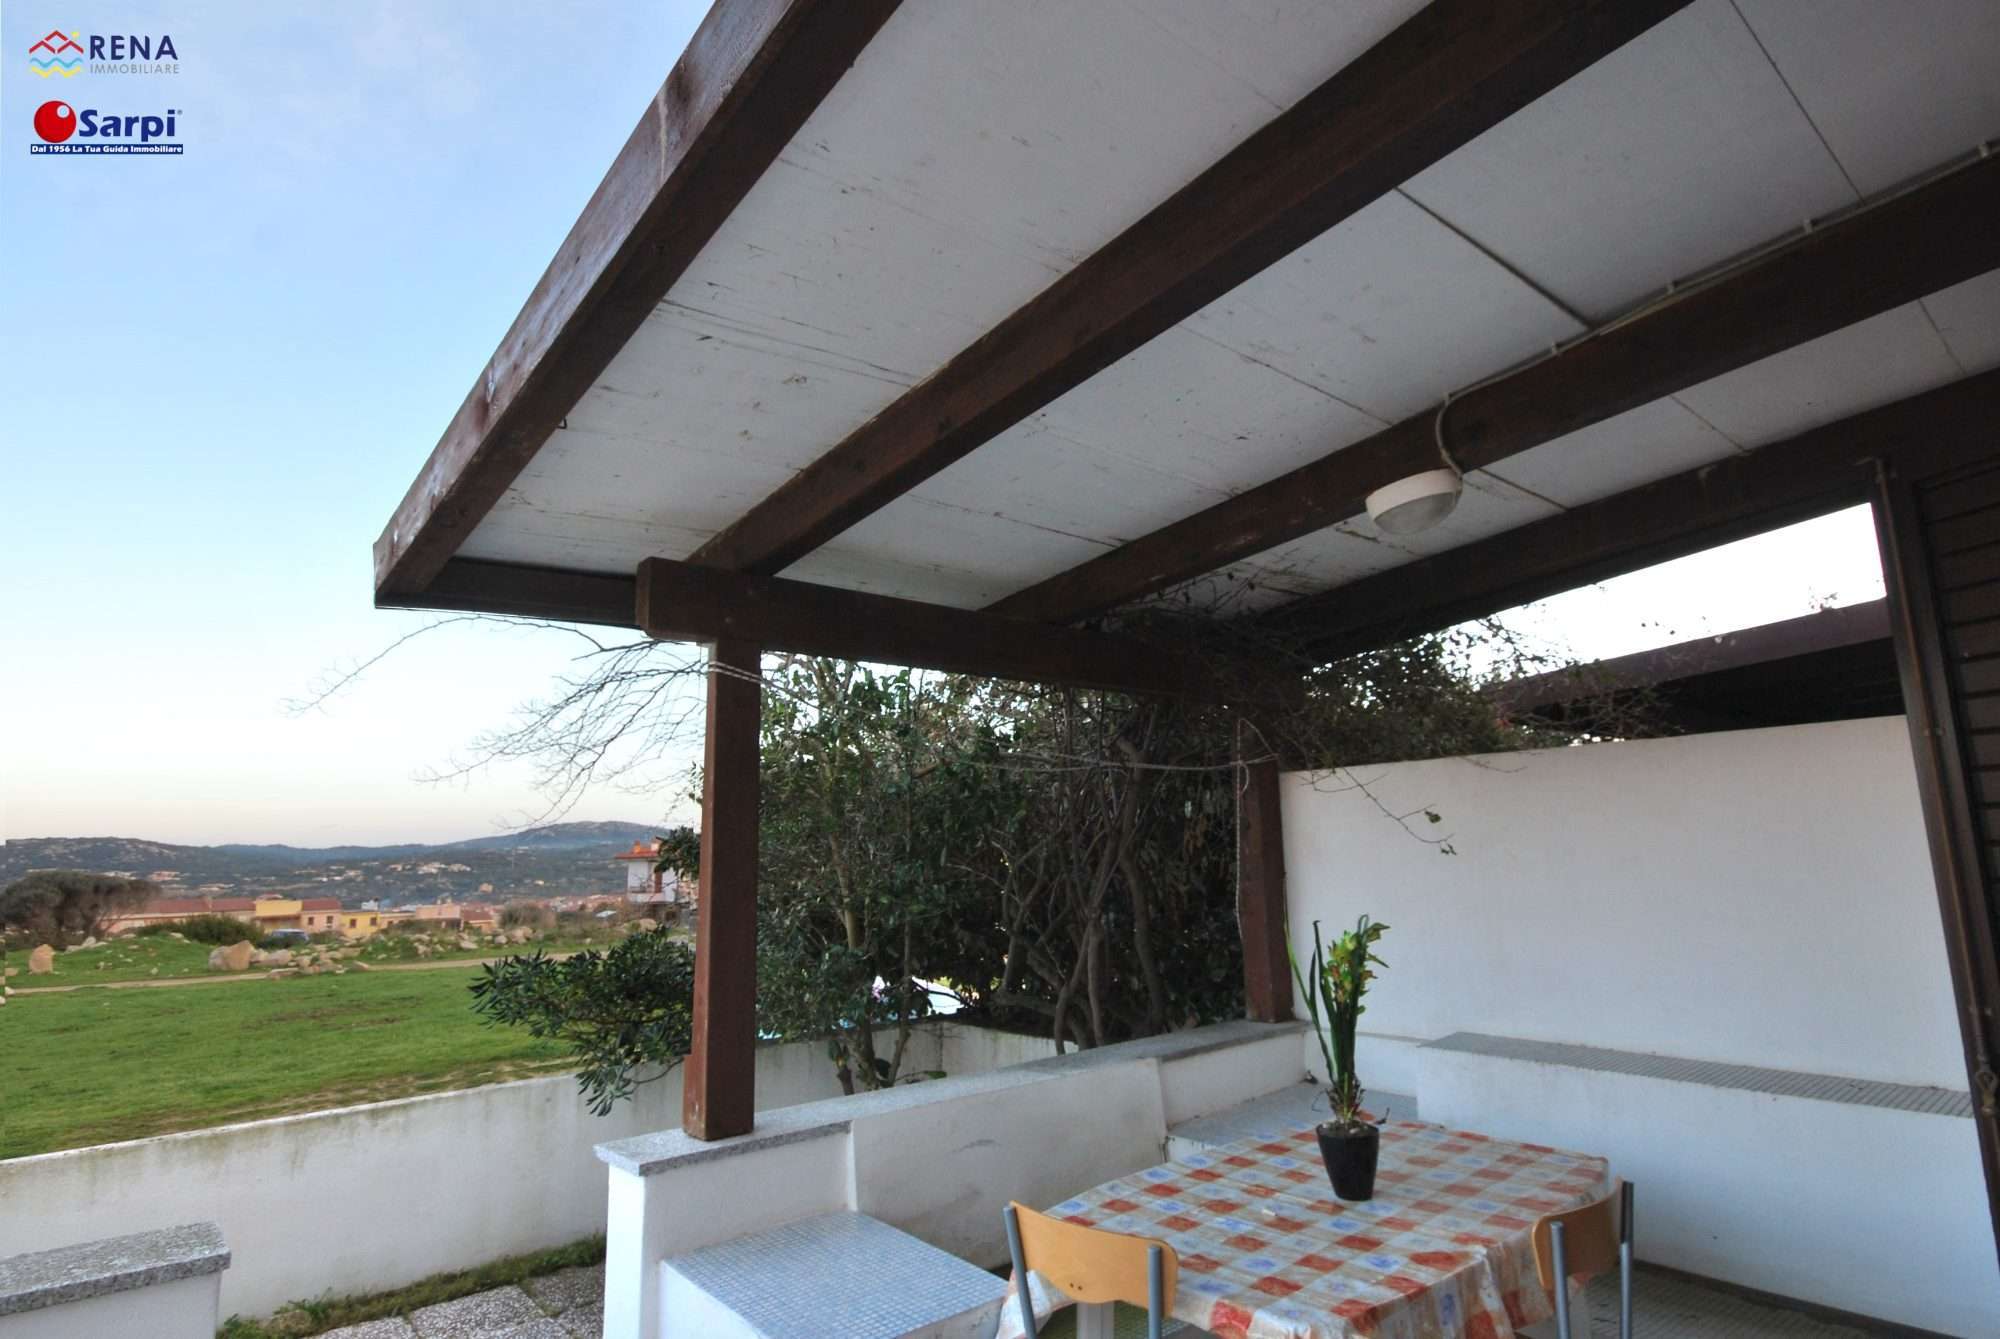 Interessante bilocale con veranda coperta – Santa Teresa Gallura